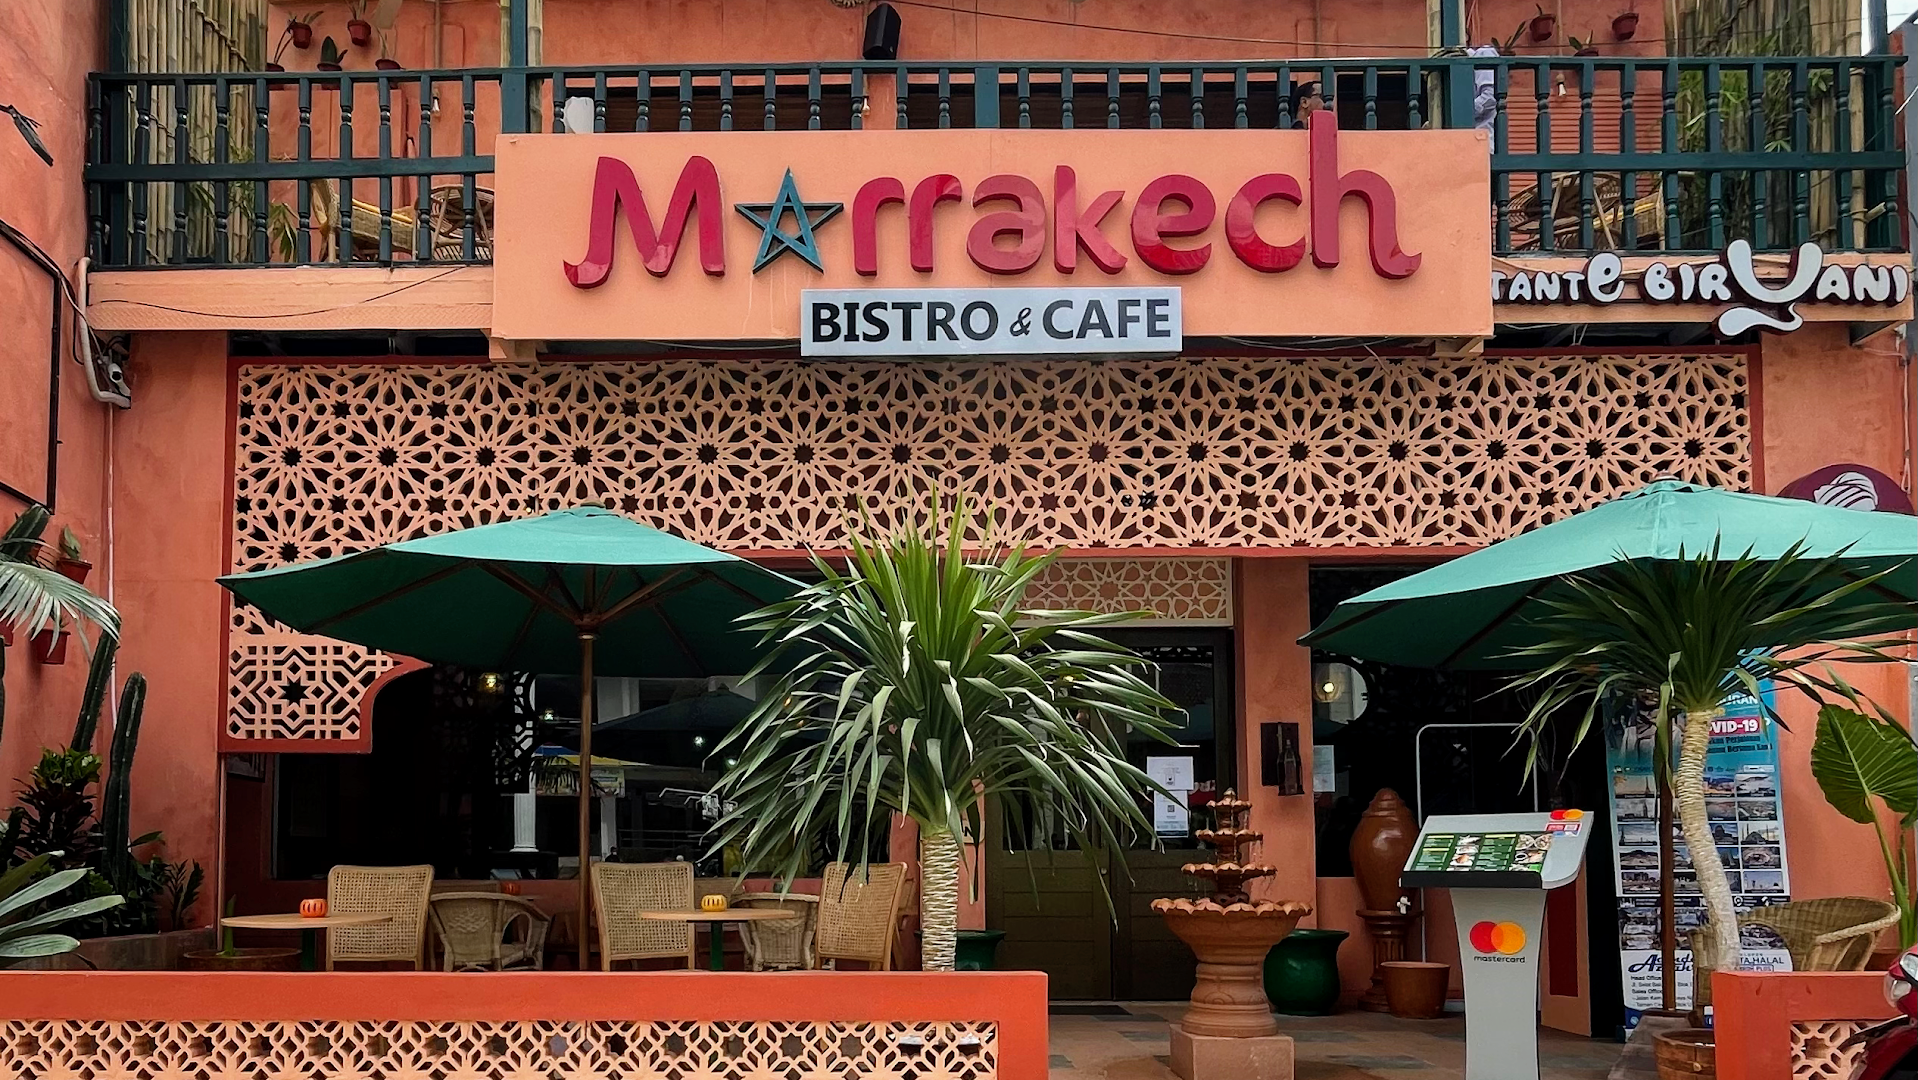 Marrakech Bistro & Cafe Photo